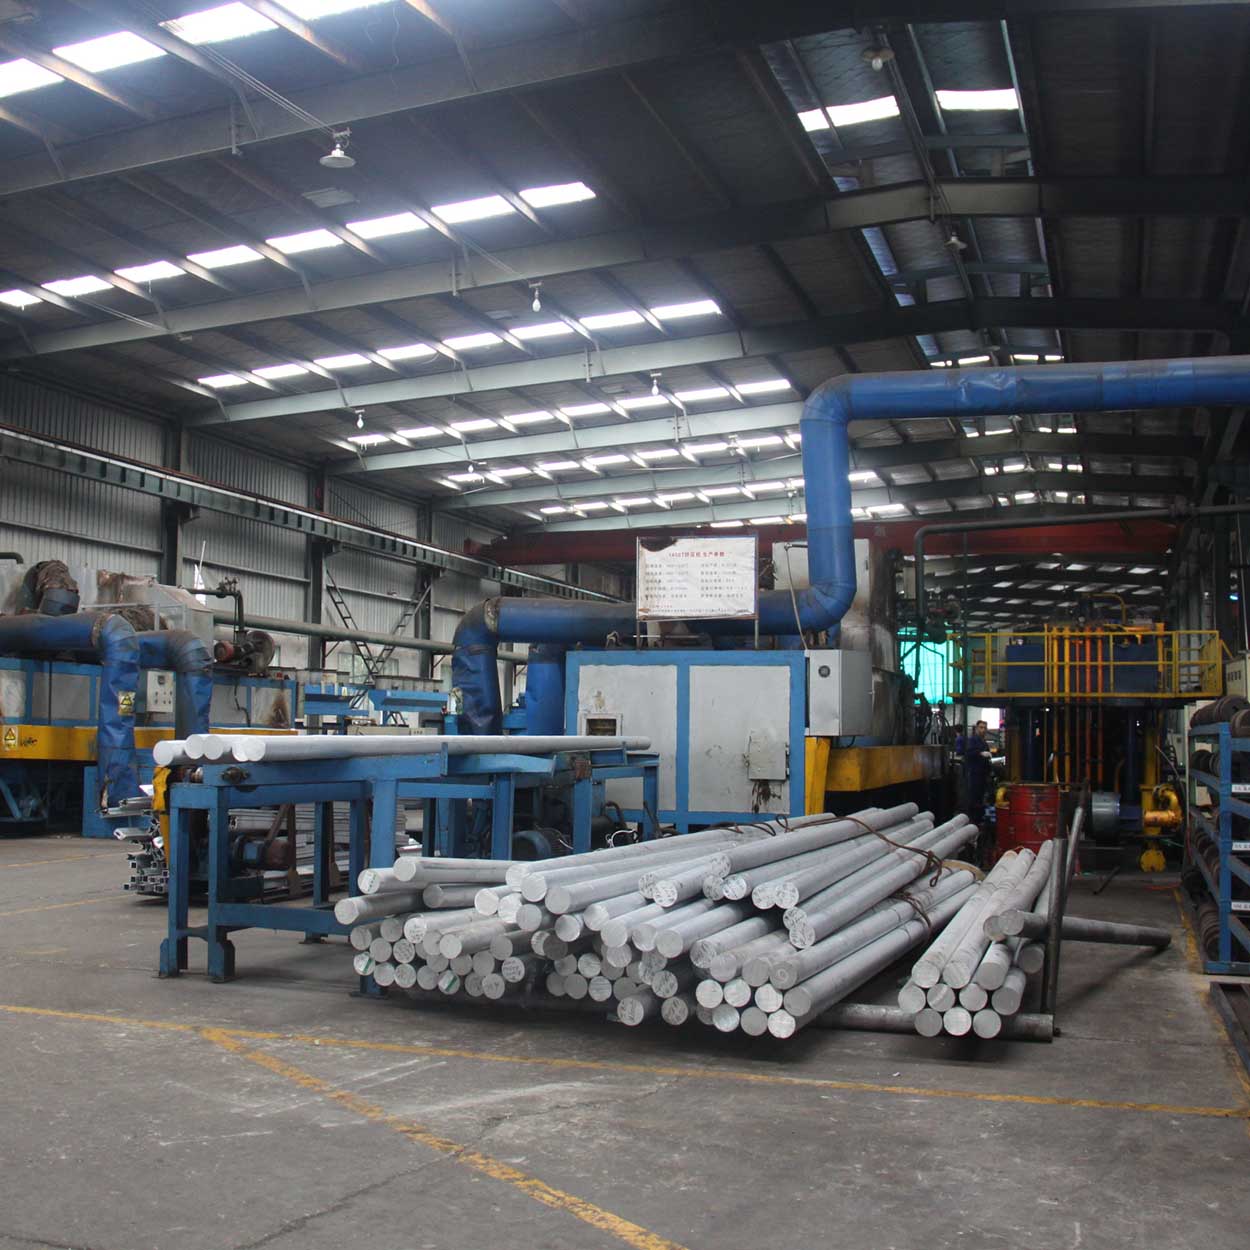 processo de produção de extrusão de alumínio